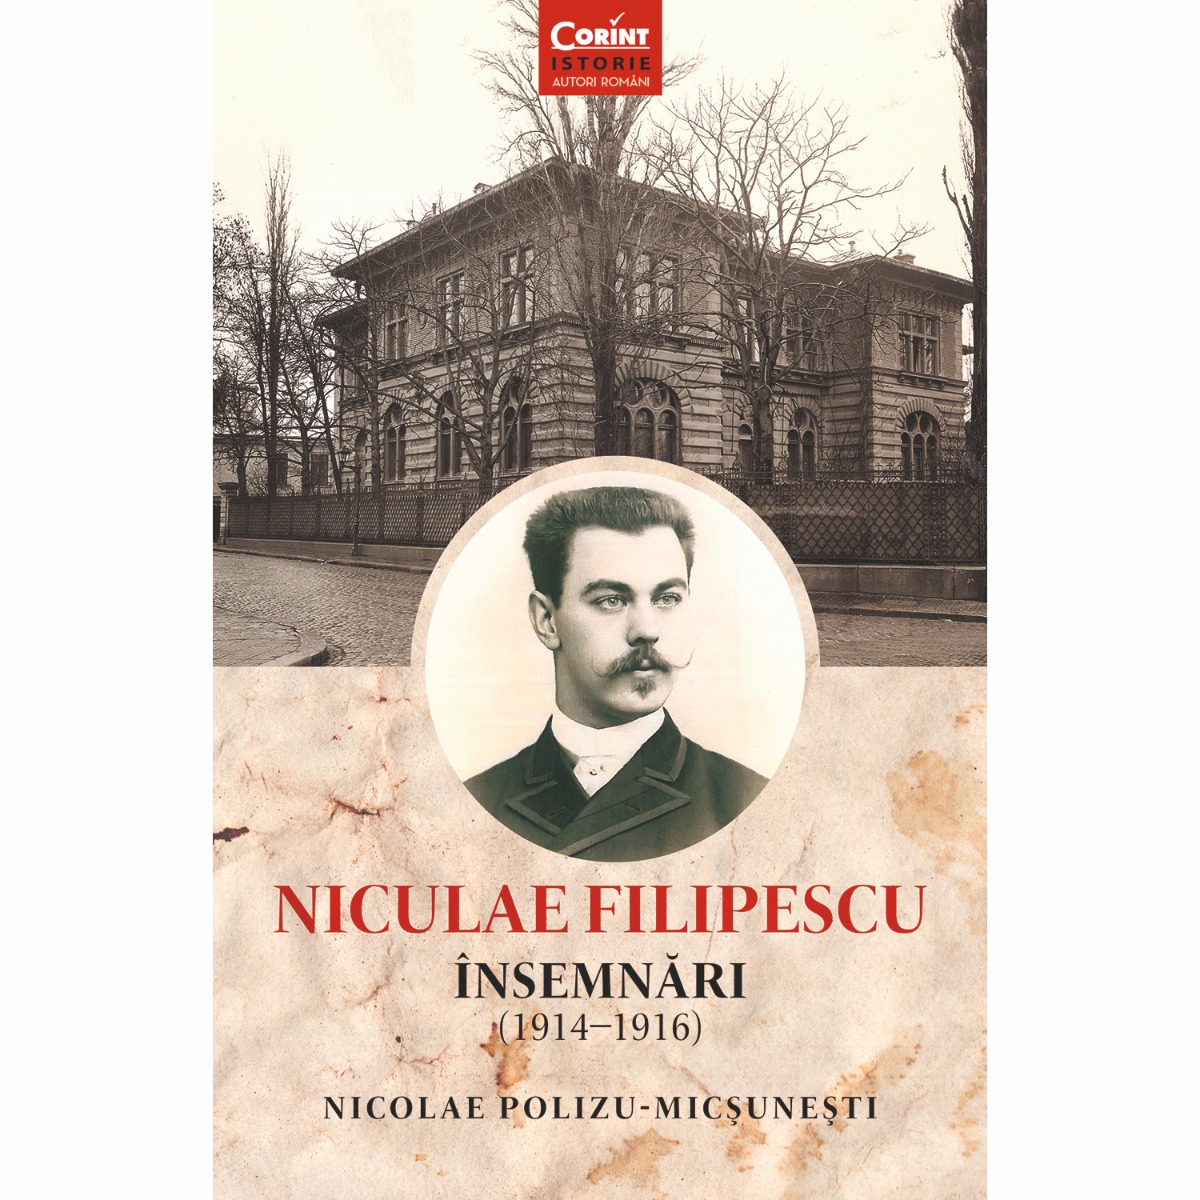 Carte Editura Corint, Niculae Filipescu. Insemnari (1914-1916), Nicolae Polizu-Micsunesti Corint